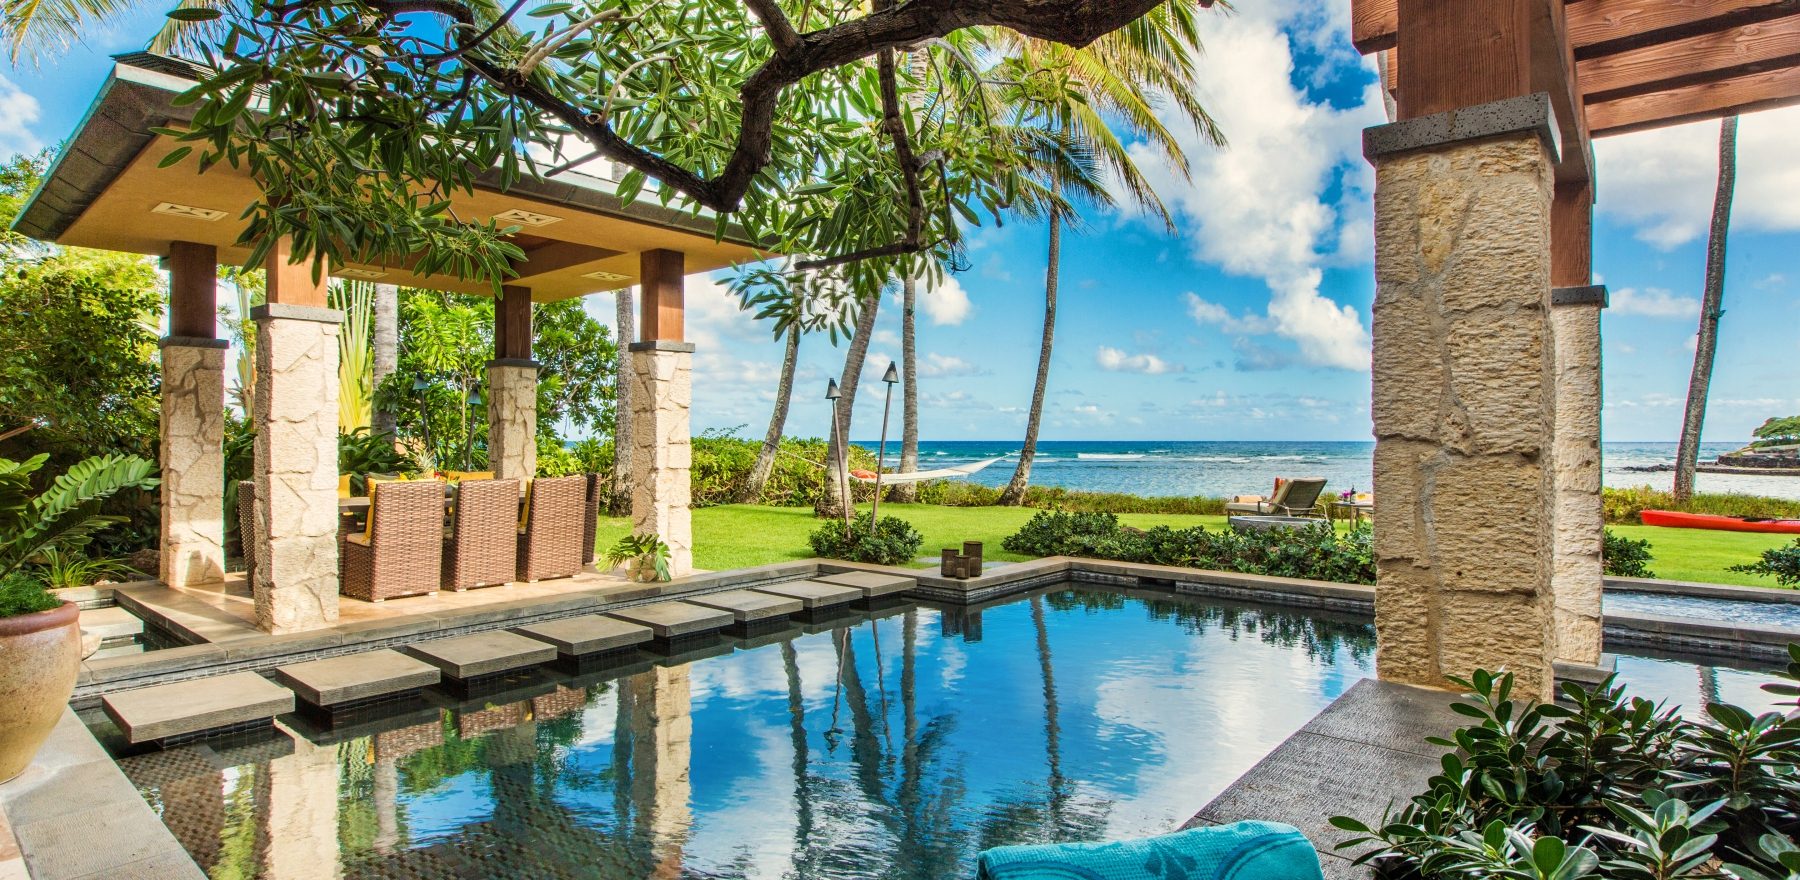 Honeyed Jade Luxury Home Rental - Pool & Spa - Hawaii Hideaways